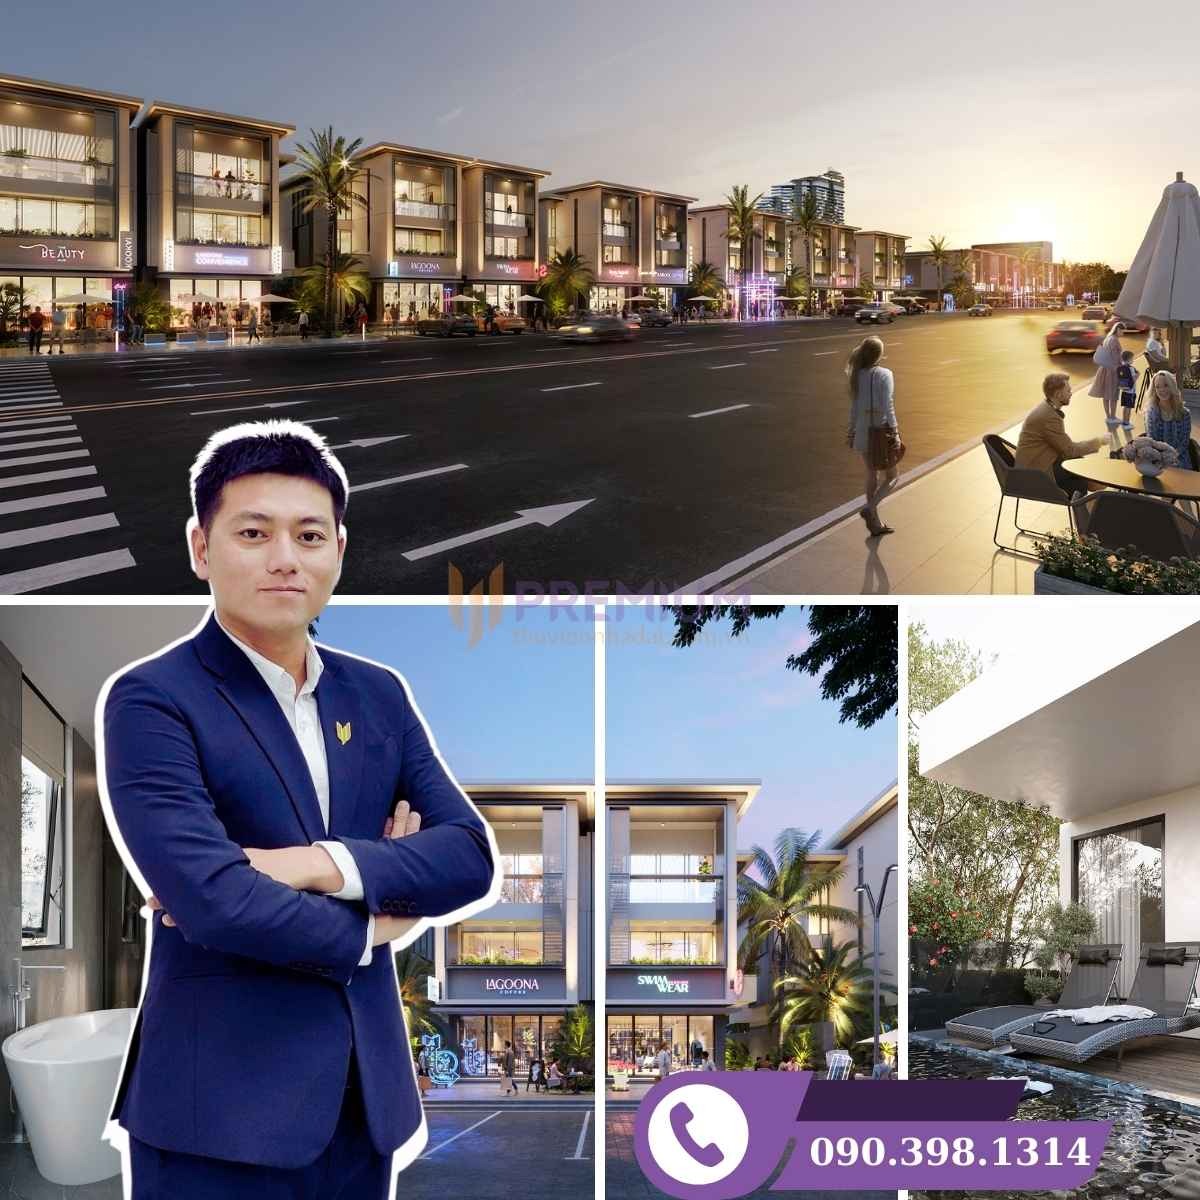 Biệt thự Lagoona Shop Villa Bình Châu - Biệt thự kinh doanh đẳng cấp, giá từ 35,9 - 47,8 tỷ đồng